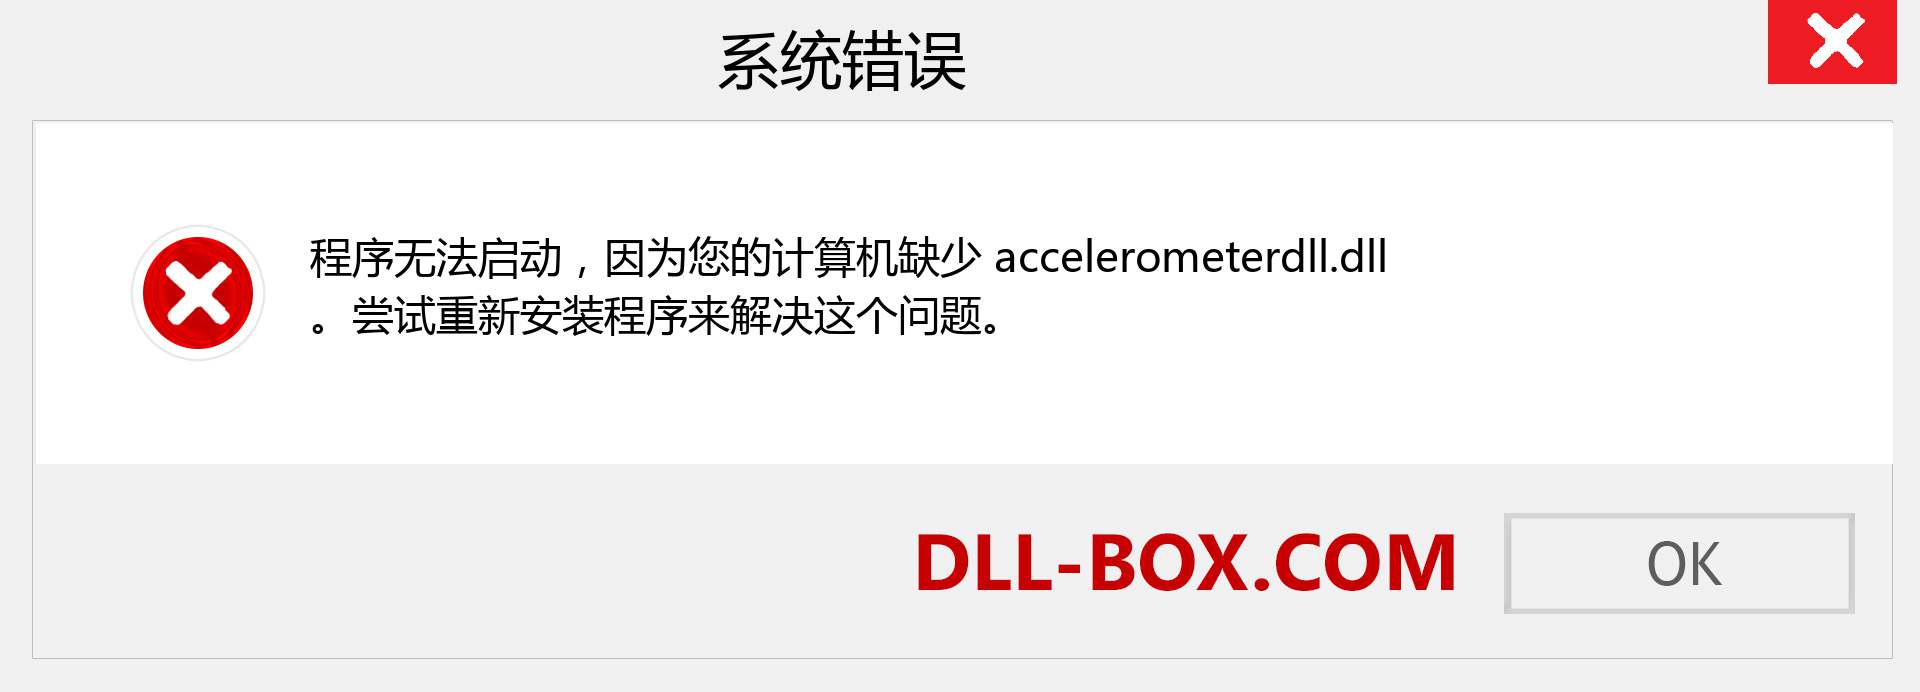 accelerometerdll.dll 文件丢失？。 适用于 Windows 7、8、10 的下载 - 修复 Windows、照片、图像上的 accelerometerdll dll 丢失错误